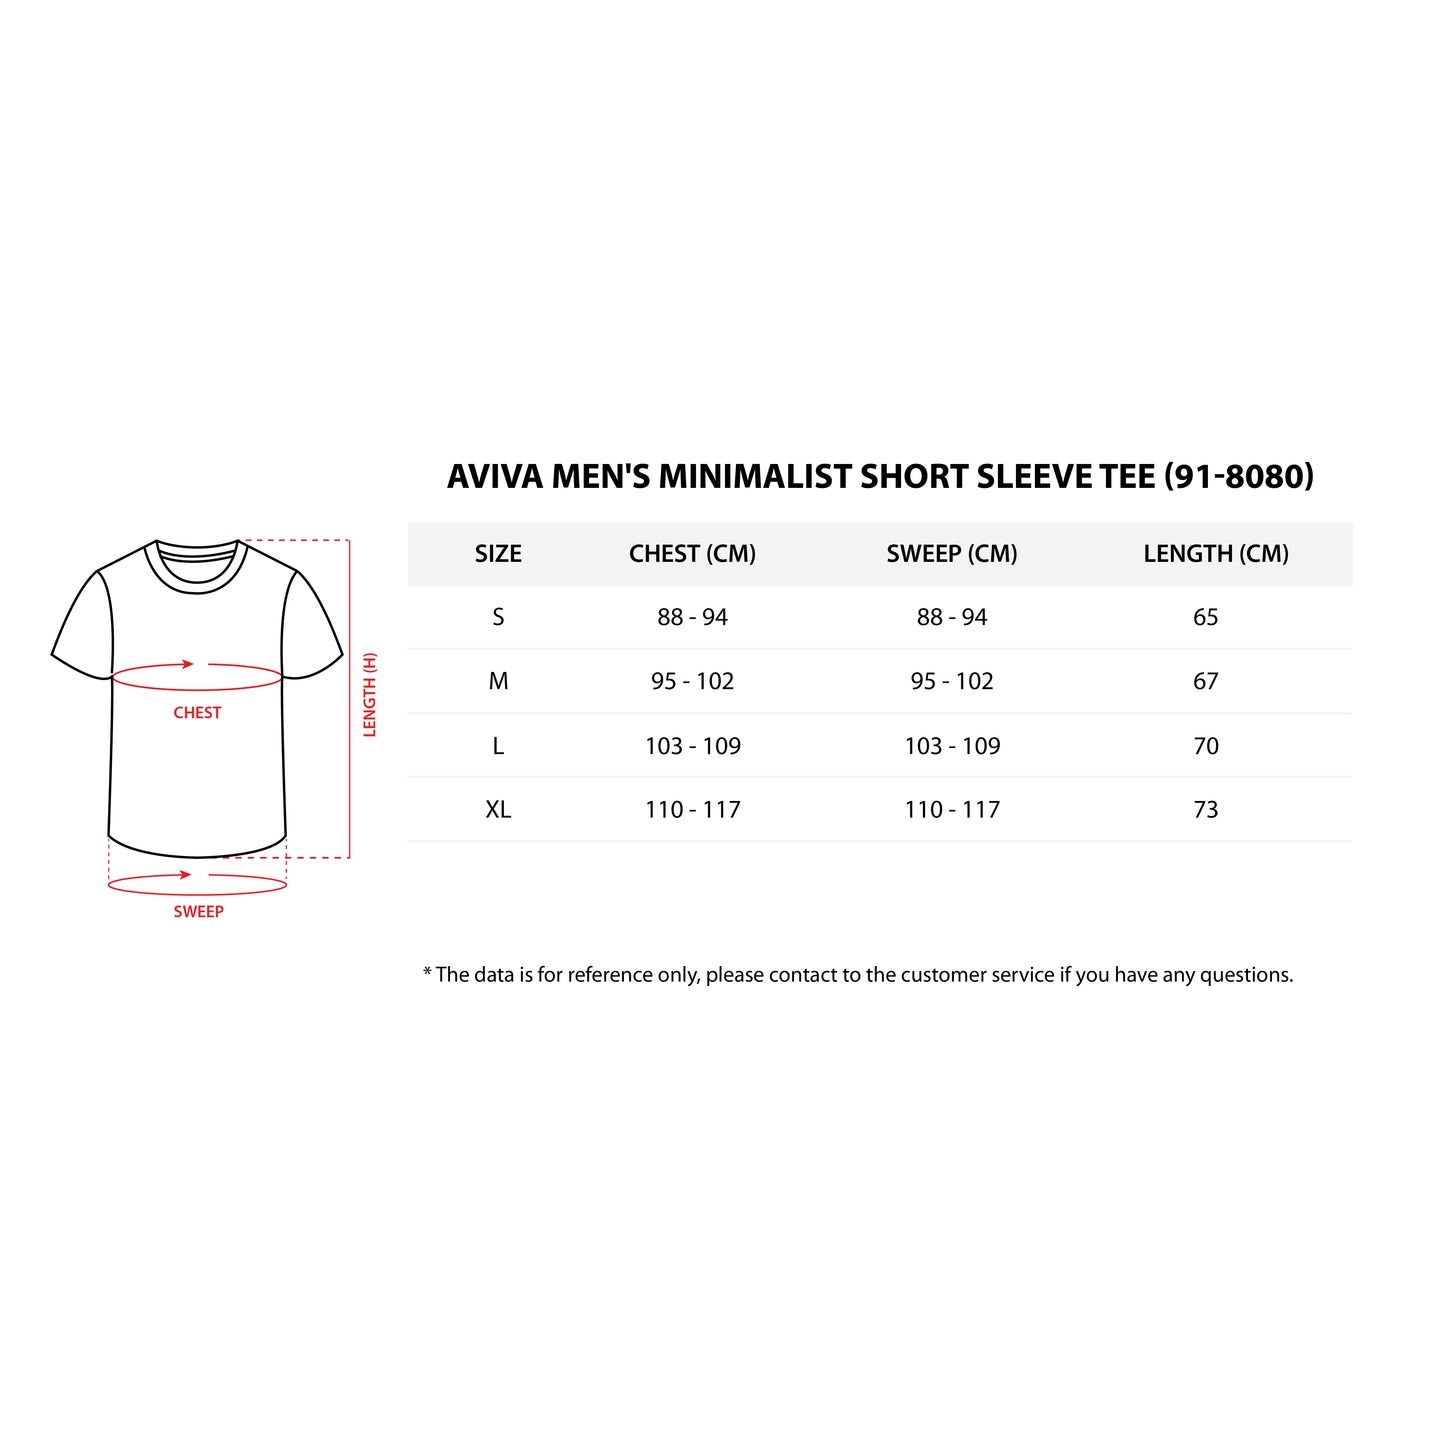 Aviva Men's Minimalist Short Sleeve Tee (91-8080)